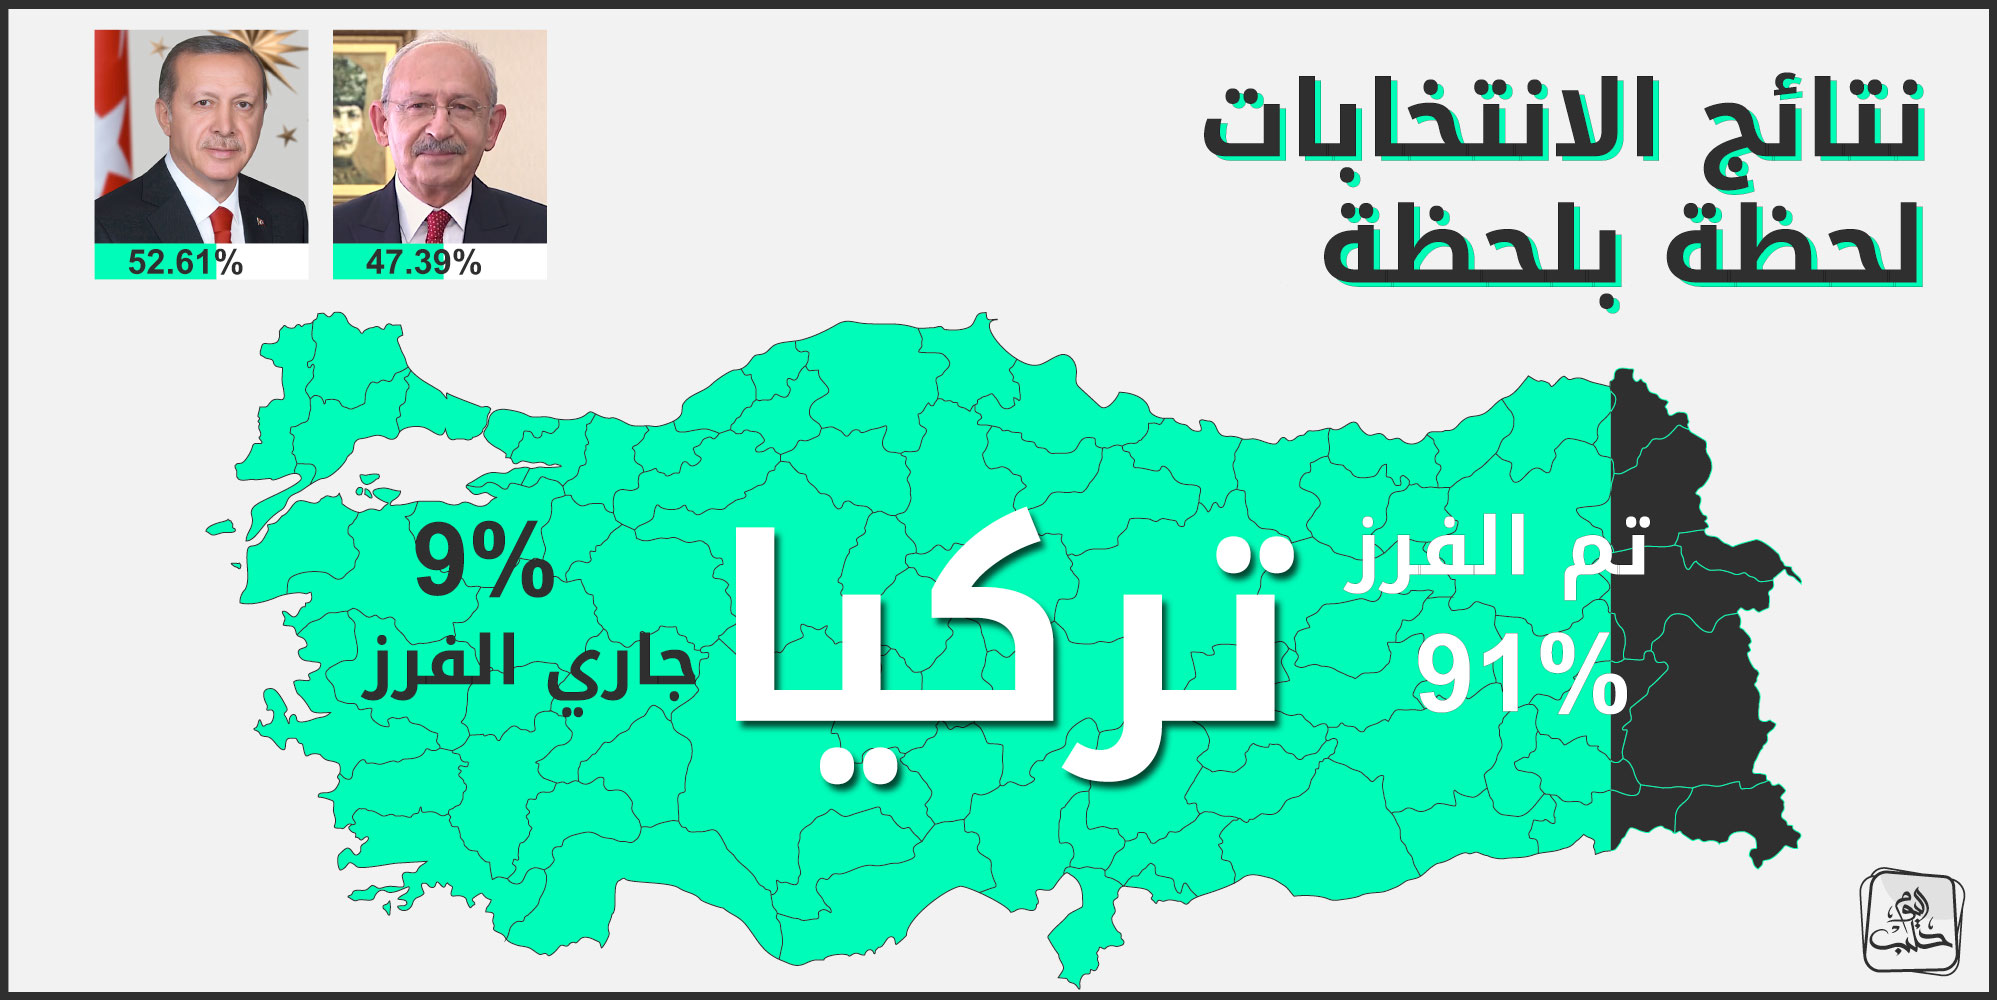 النتائج الأولية للانتخابات الرئاسية التركية بعد فرز 91% من صناديق الاقتراع